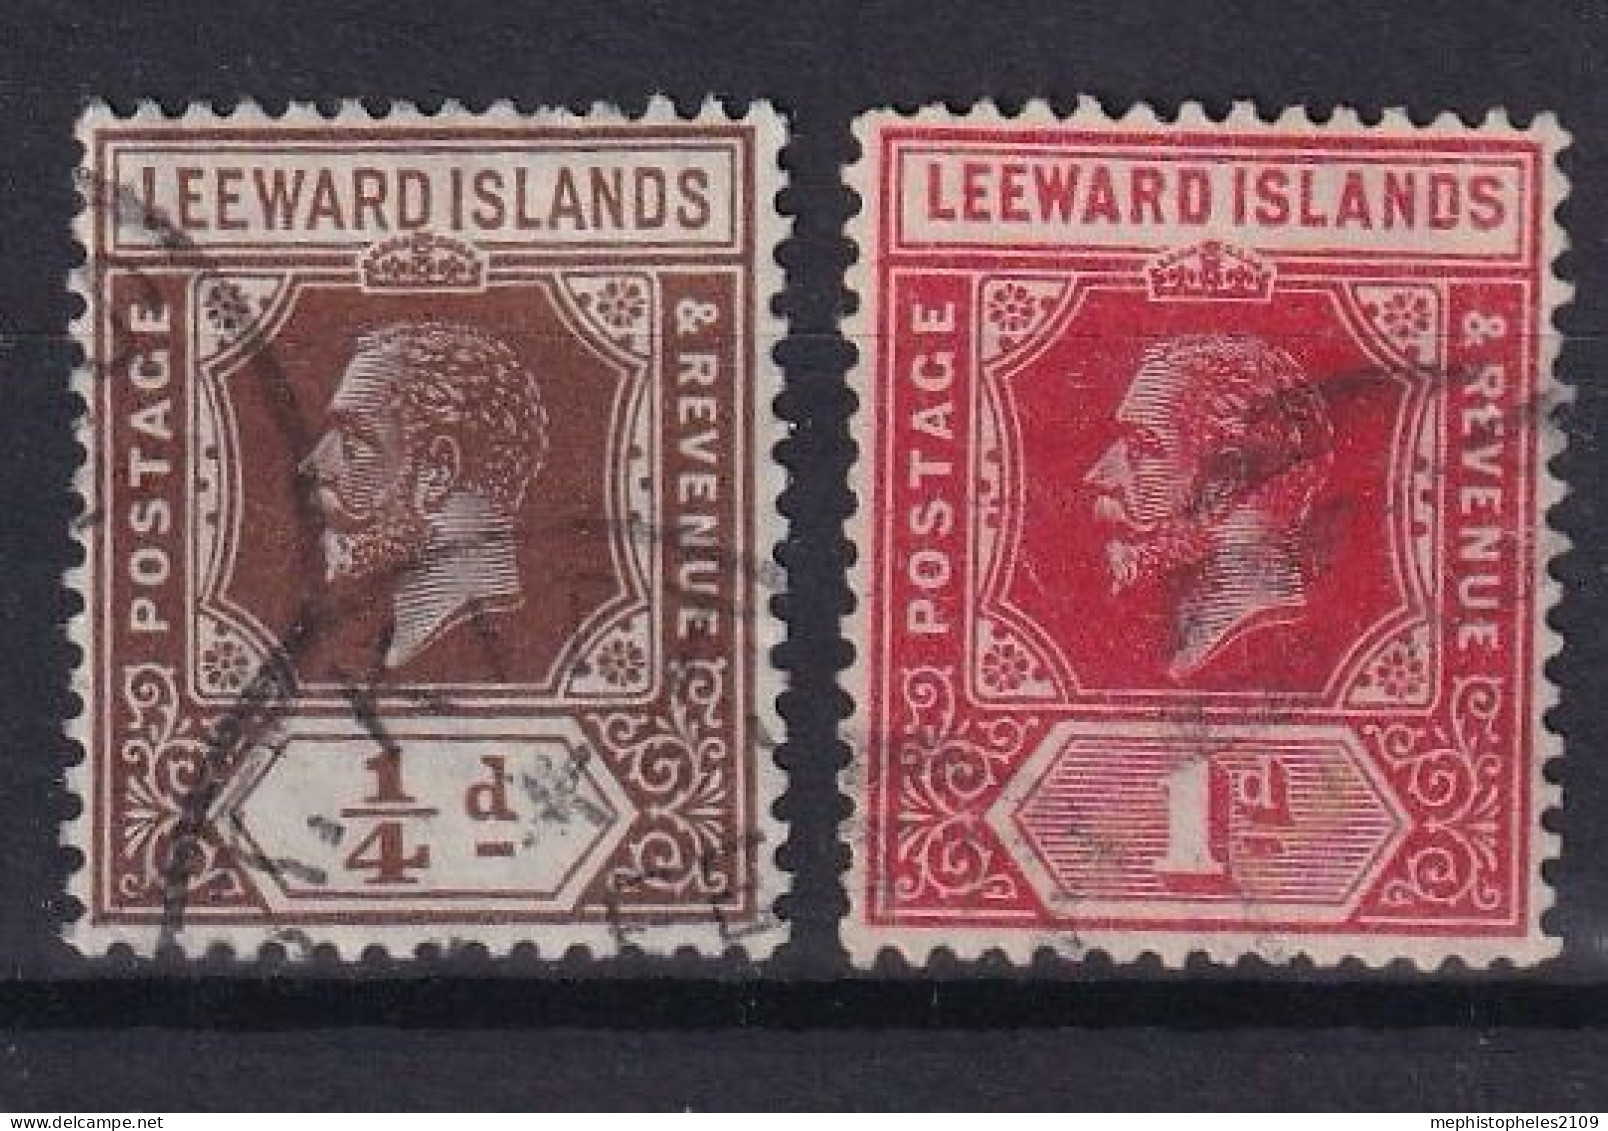 LEEWARD ISLANDS 1912 - Canceled - Sc# 46, 48 - Leeward  Islands